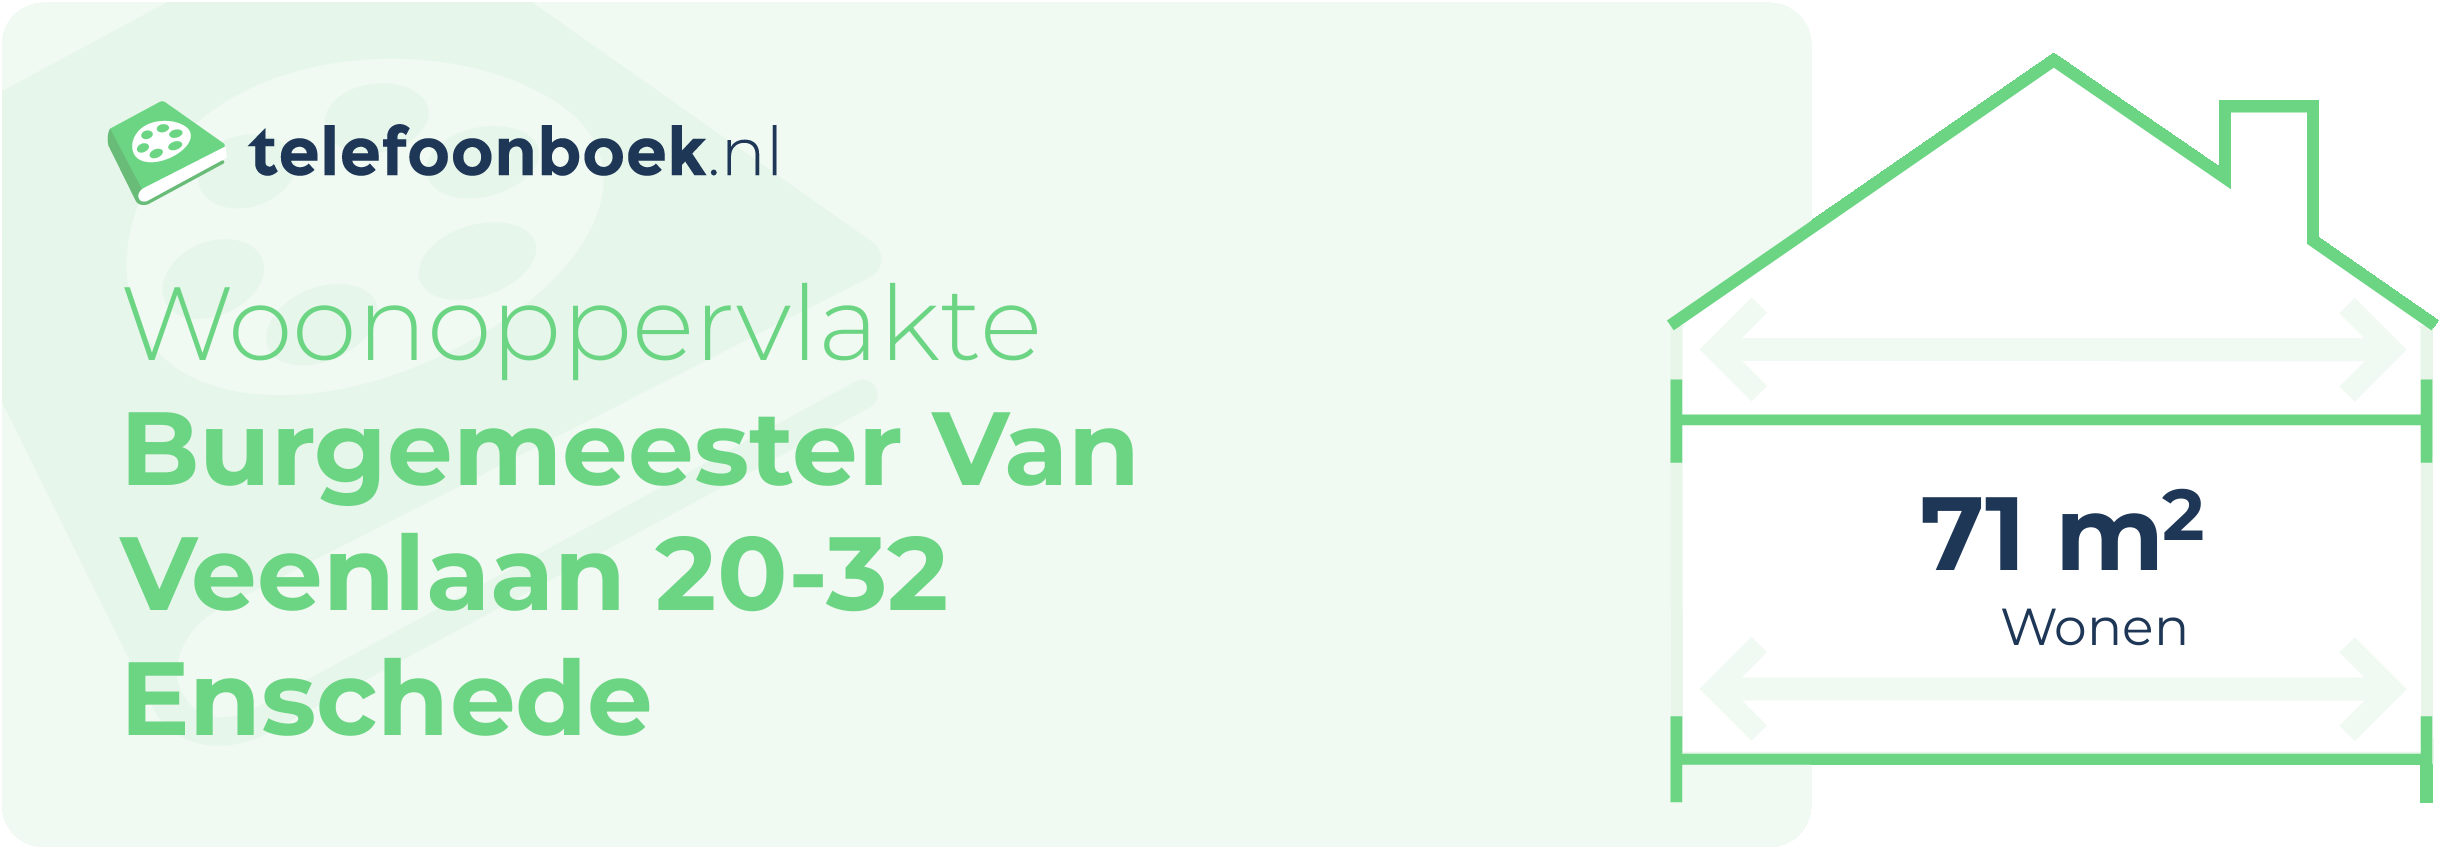 Woonoppervlakte Burgemeester Van Veenlaan 20-32 Enschede